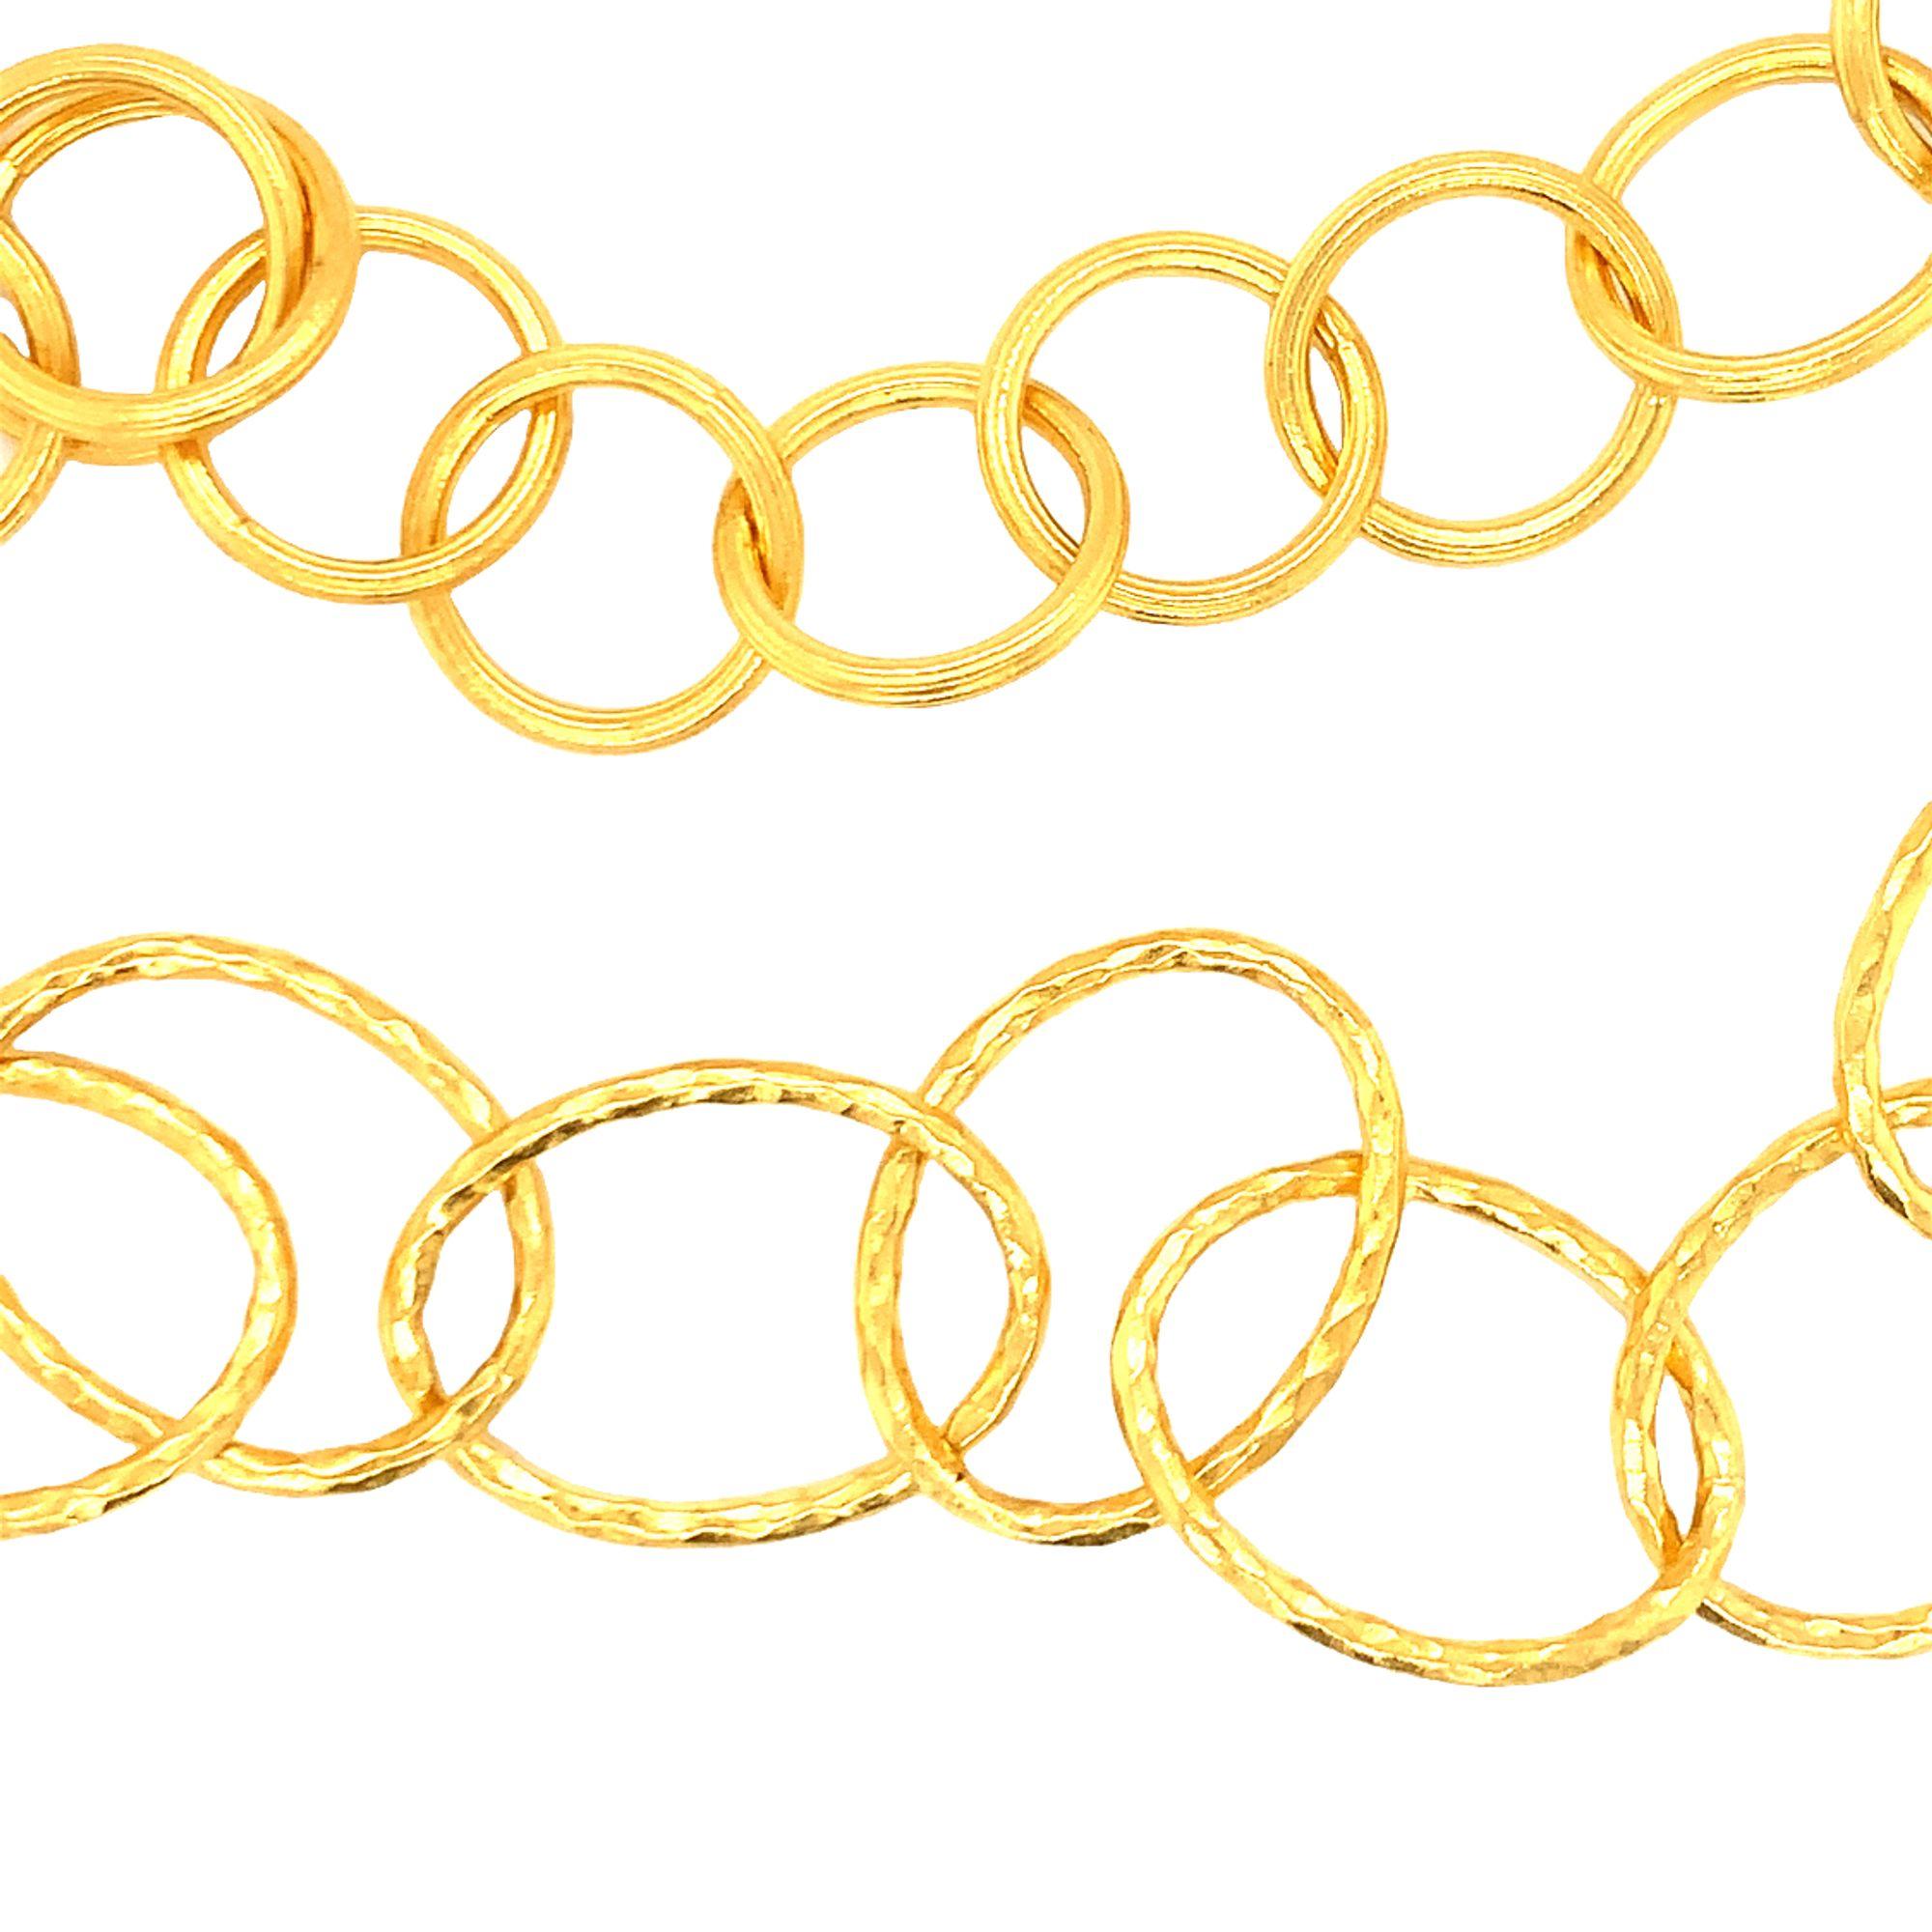 Ein ovales und ein rundes Halsband mit offenen Gliedern, das Gurhan zugeschrieben wird, mit strukturierter und gehämmerter Goldoberfläche. Die kreisförmigen Glieder haben einen Durchmesser von 15 Millimetern, die kleinen ovalen Glieder messen 24 x